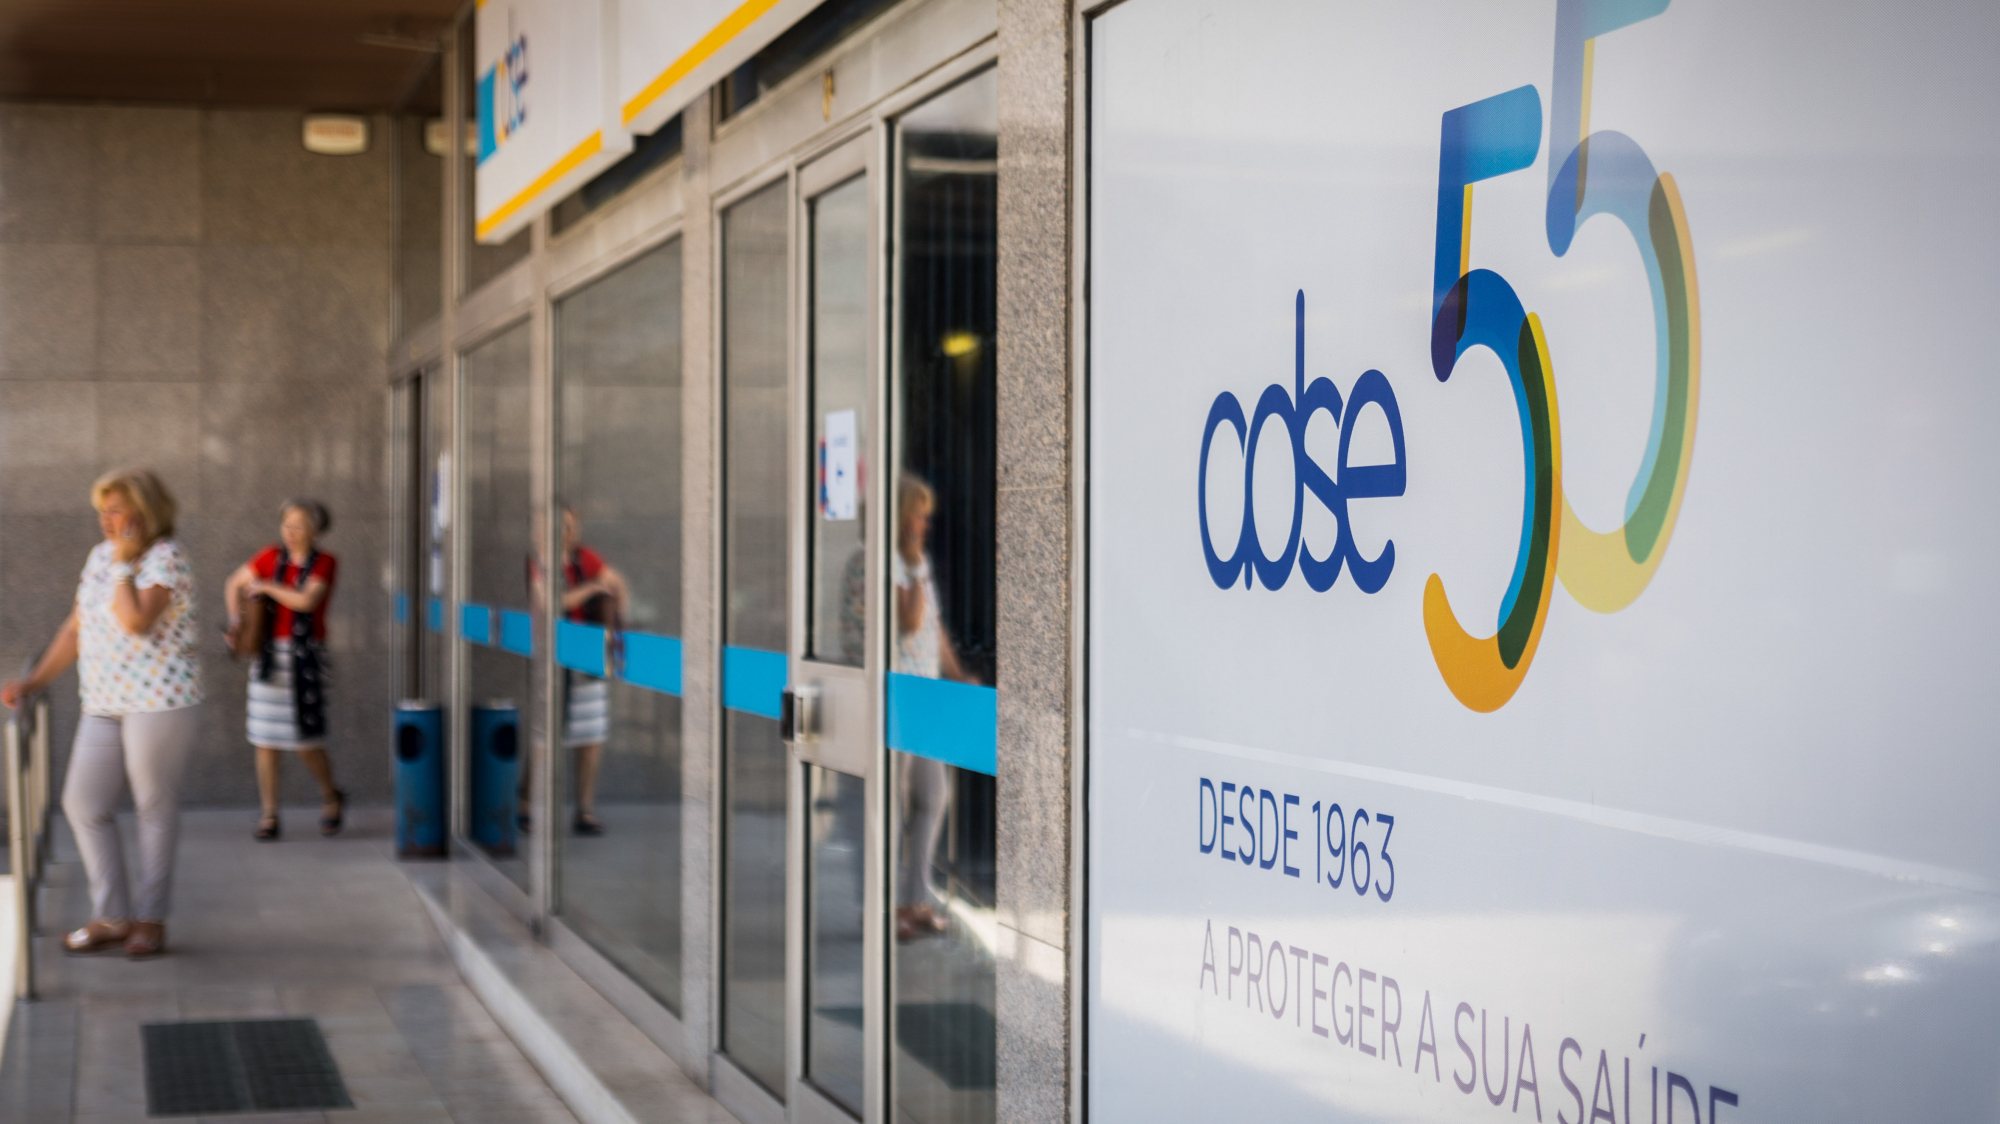 Beneficiários titulares da ADSE avancem dos 707 milhões de euros em 2022